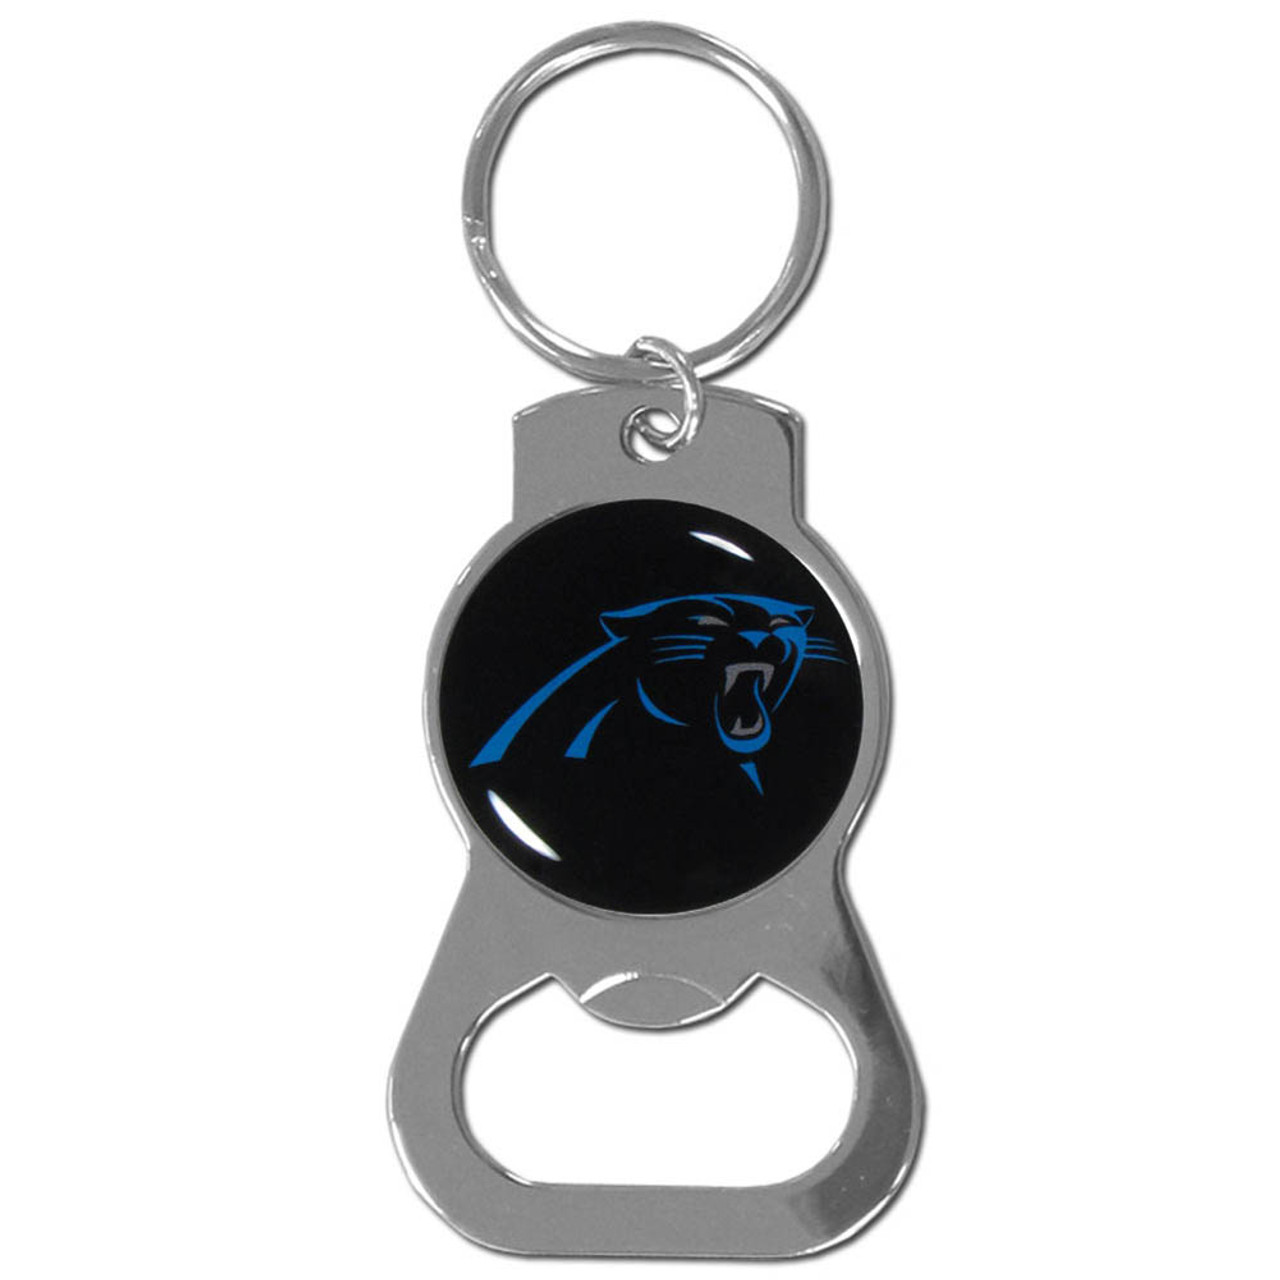  NFL Siskiyou Sports Fan Shop Carolina Panthers